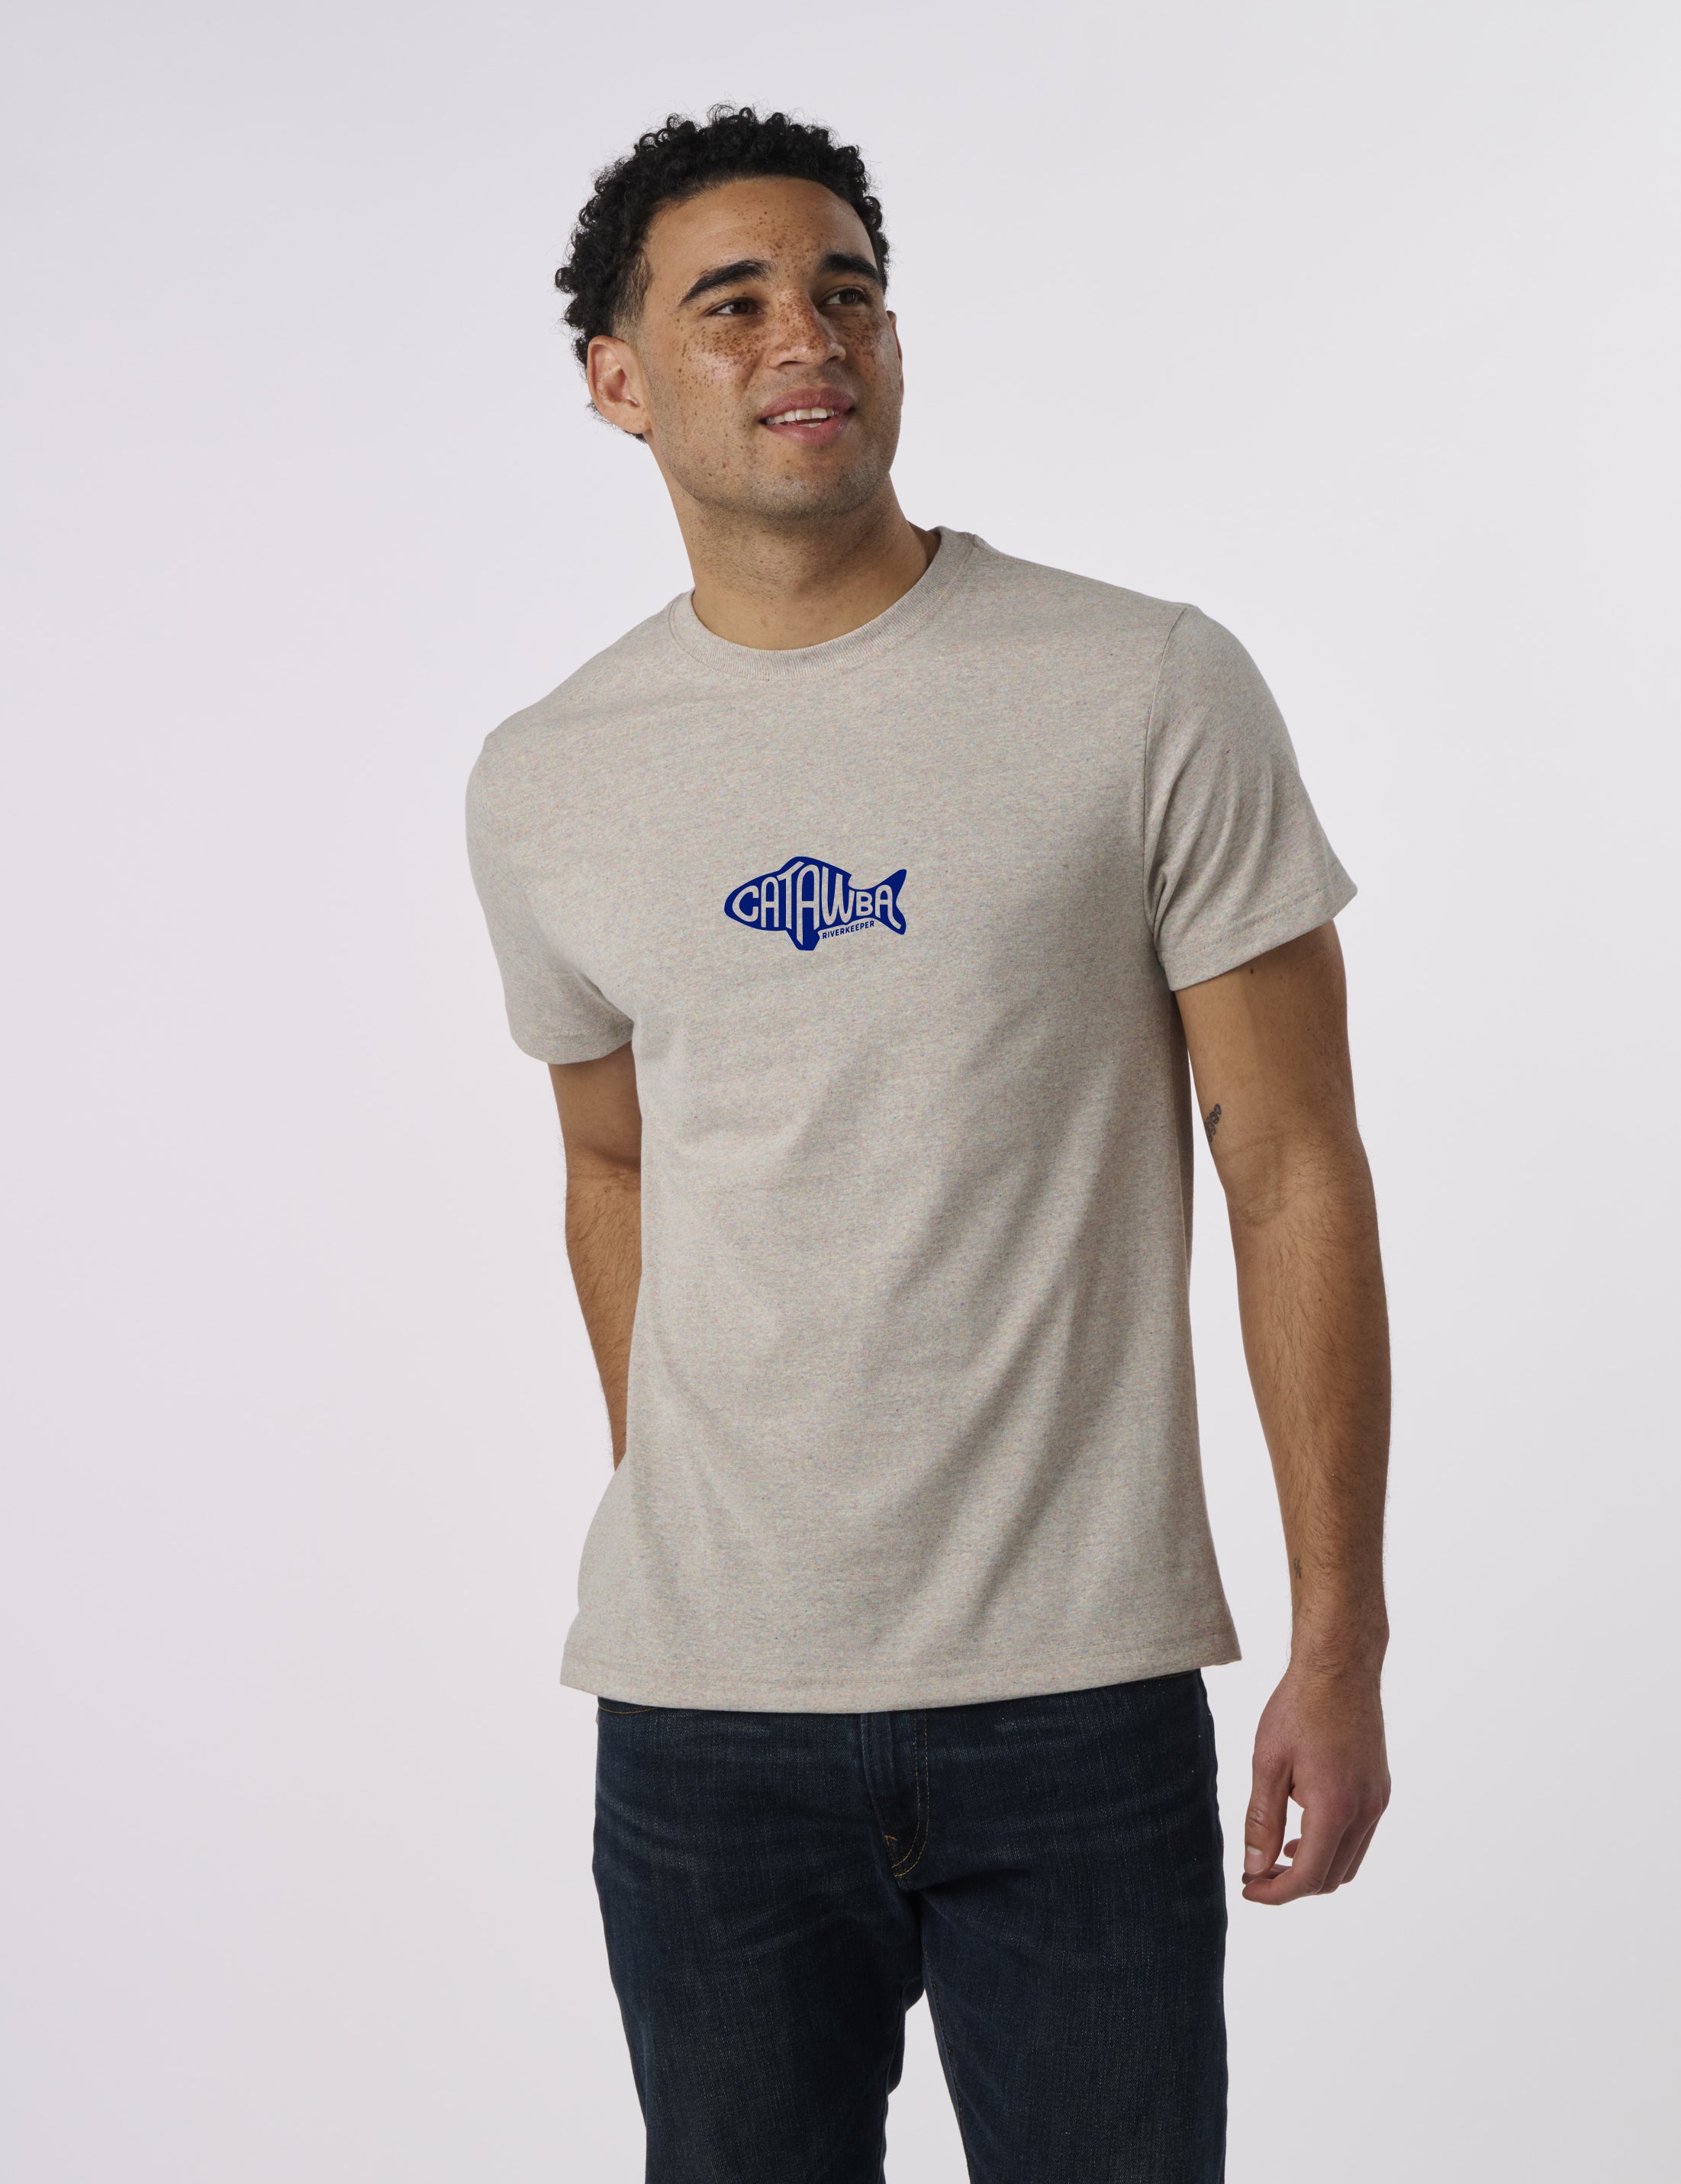 EC100 - Catawba Riverkeeper Short Sleeve T-Shirt